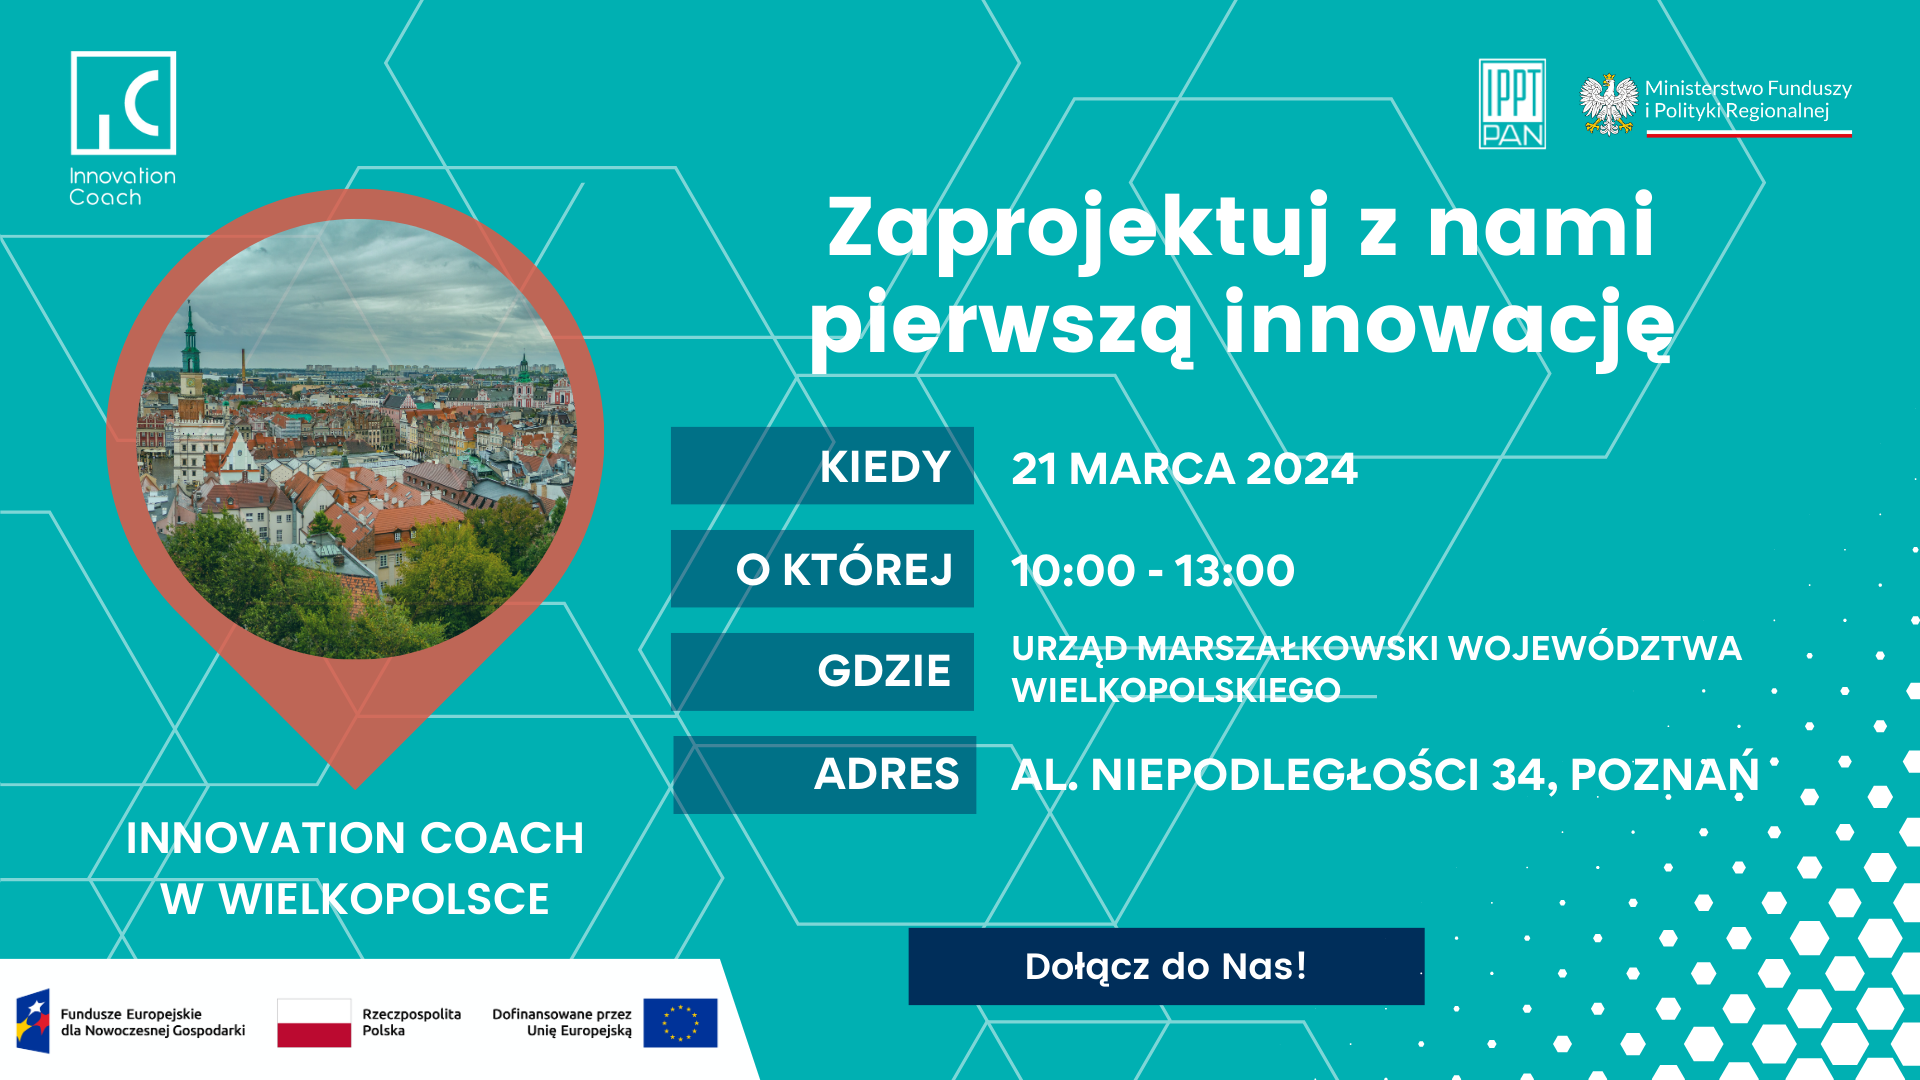 Innovation Coach w Regionach: Wielkopolska